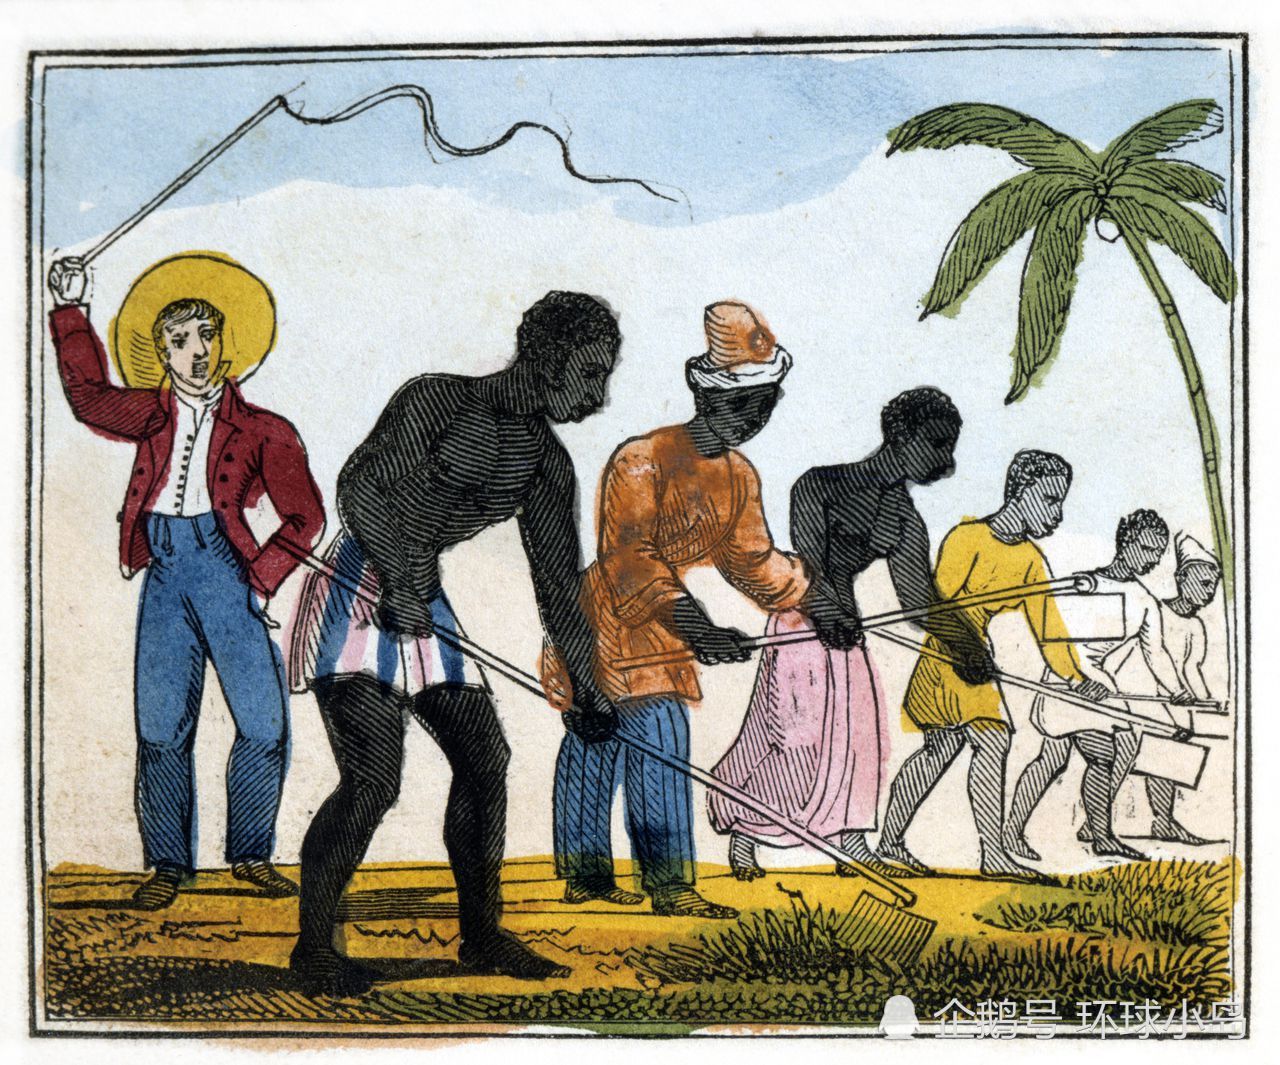 西方种族主义 大西洋黑奴贸易史影响深远